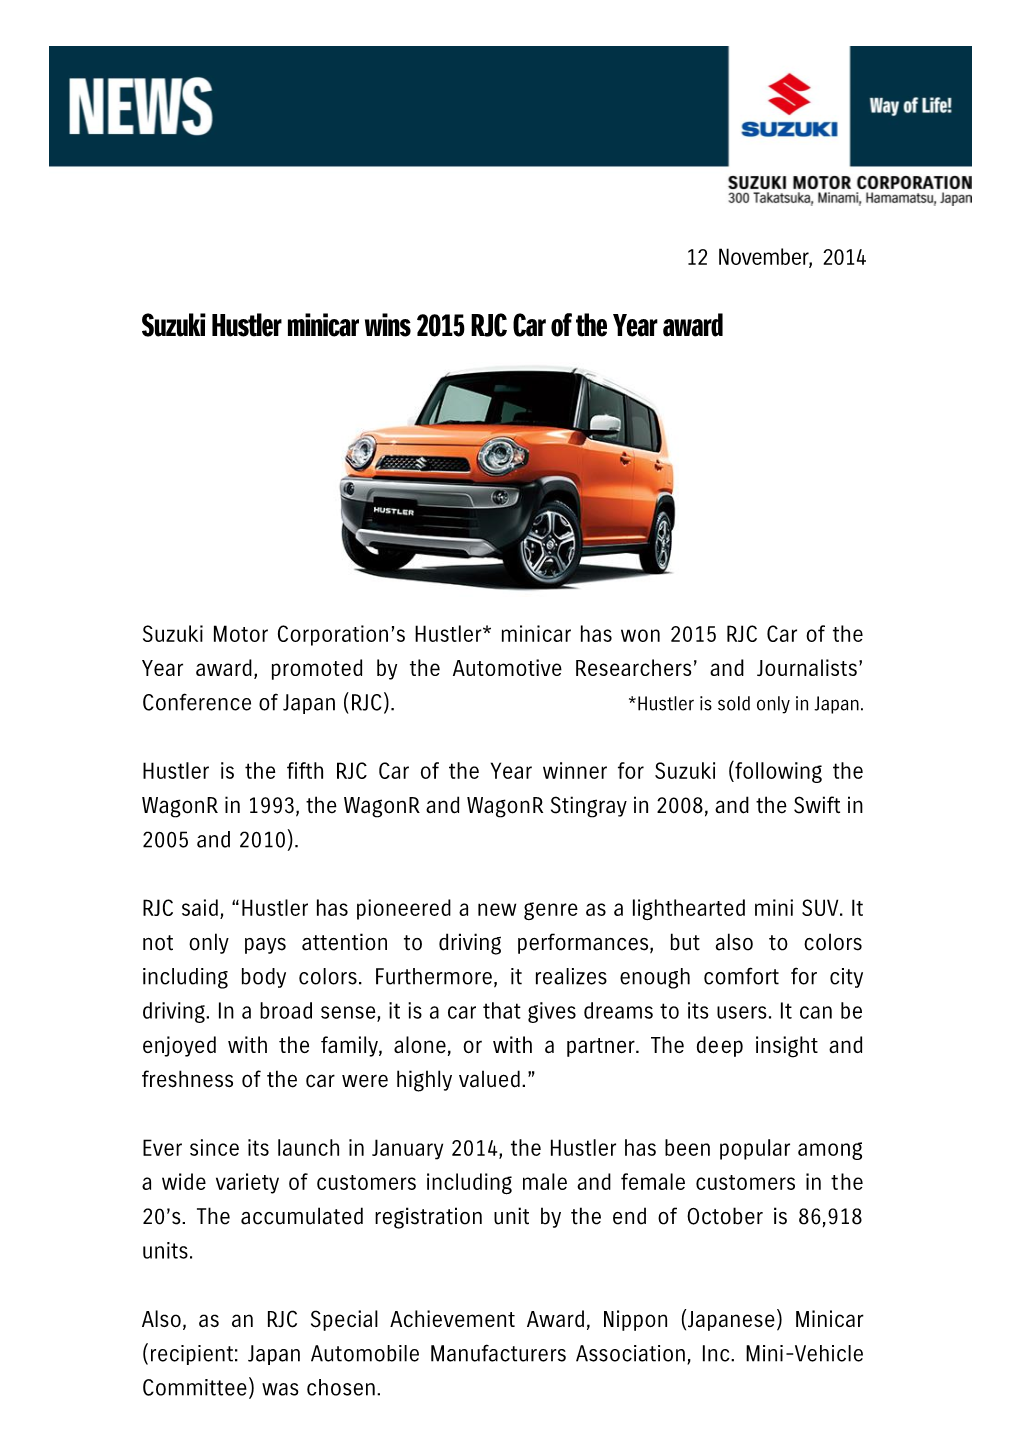 Suzuki Hustler Minicar Wins 2015 RJC Car of the Year Award